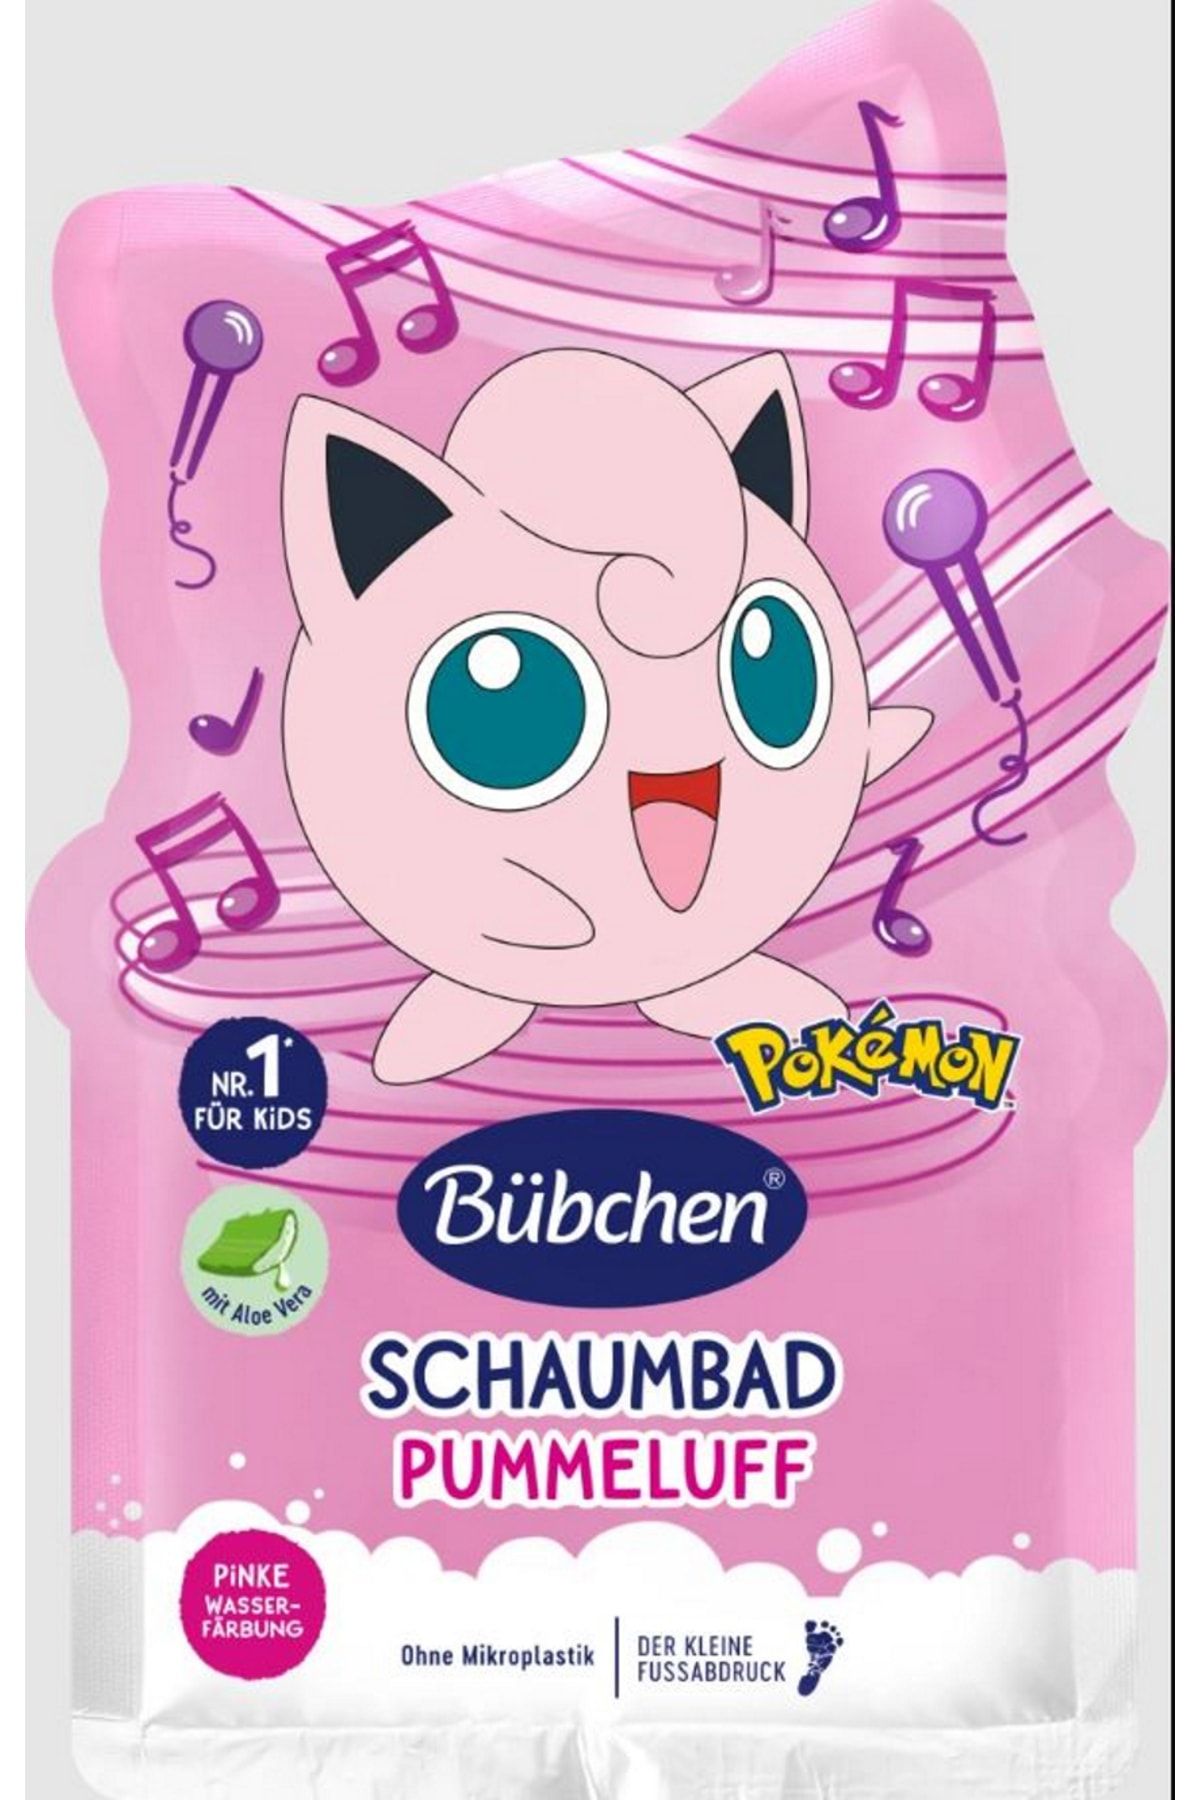 Bübchen Alman Kalitesi-çocuklar Için Pembe Renkli Banyo Köpüğü 40 Ml- Pokemon Pummeluff/jigglypuff